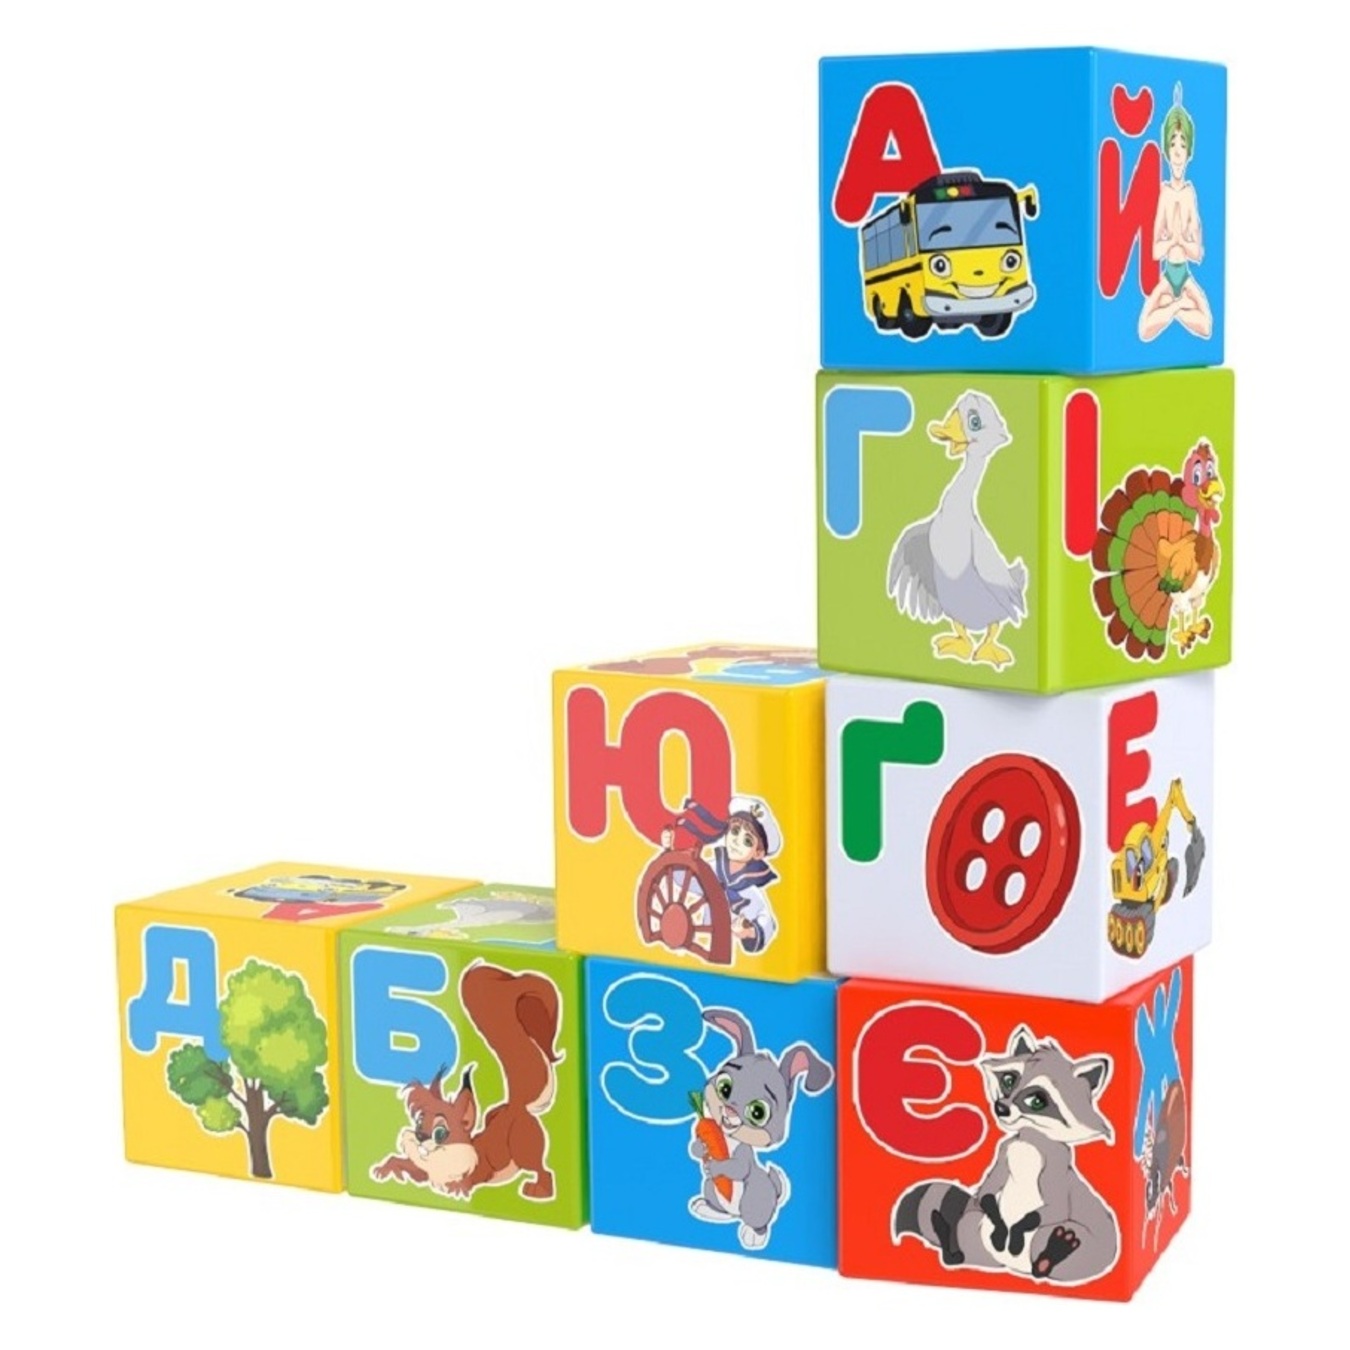 Toy cubes Alphabet Rainbow TechnoK